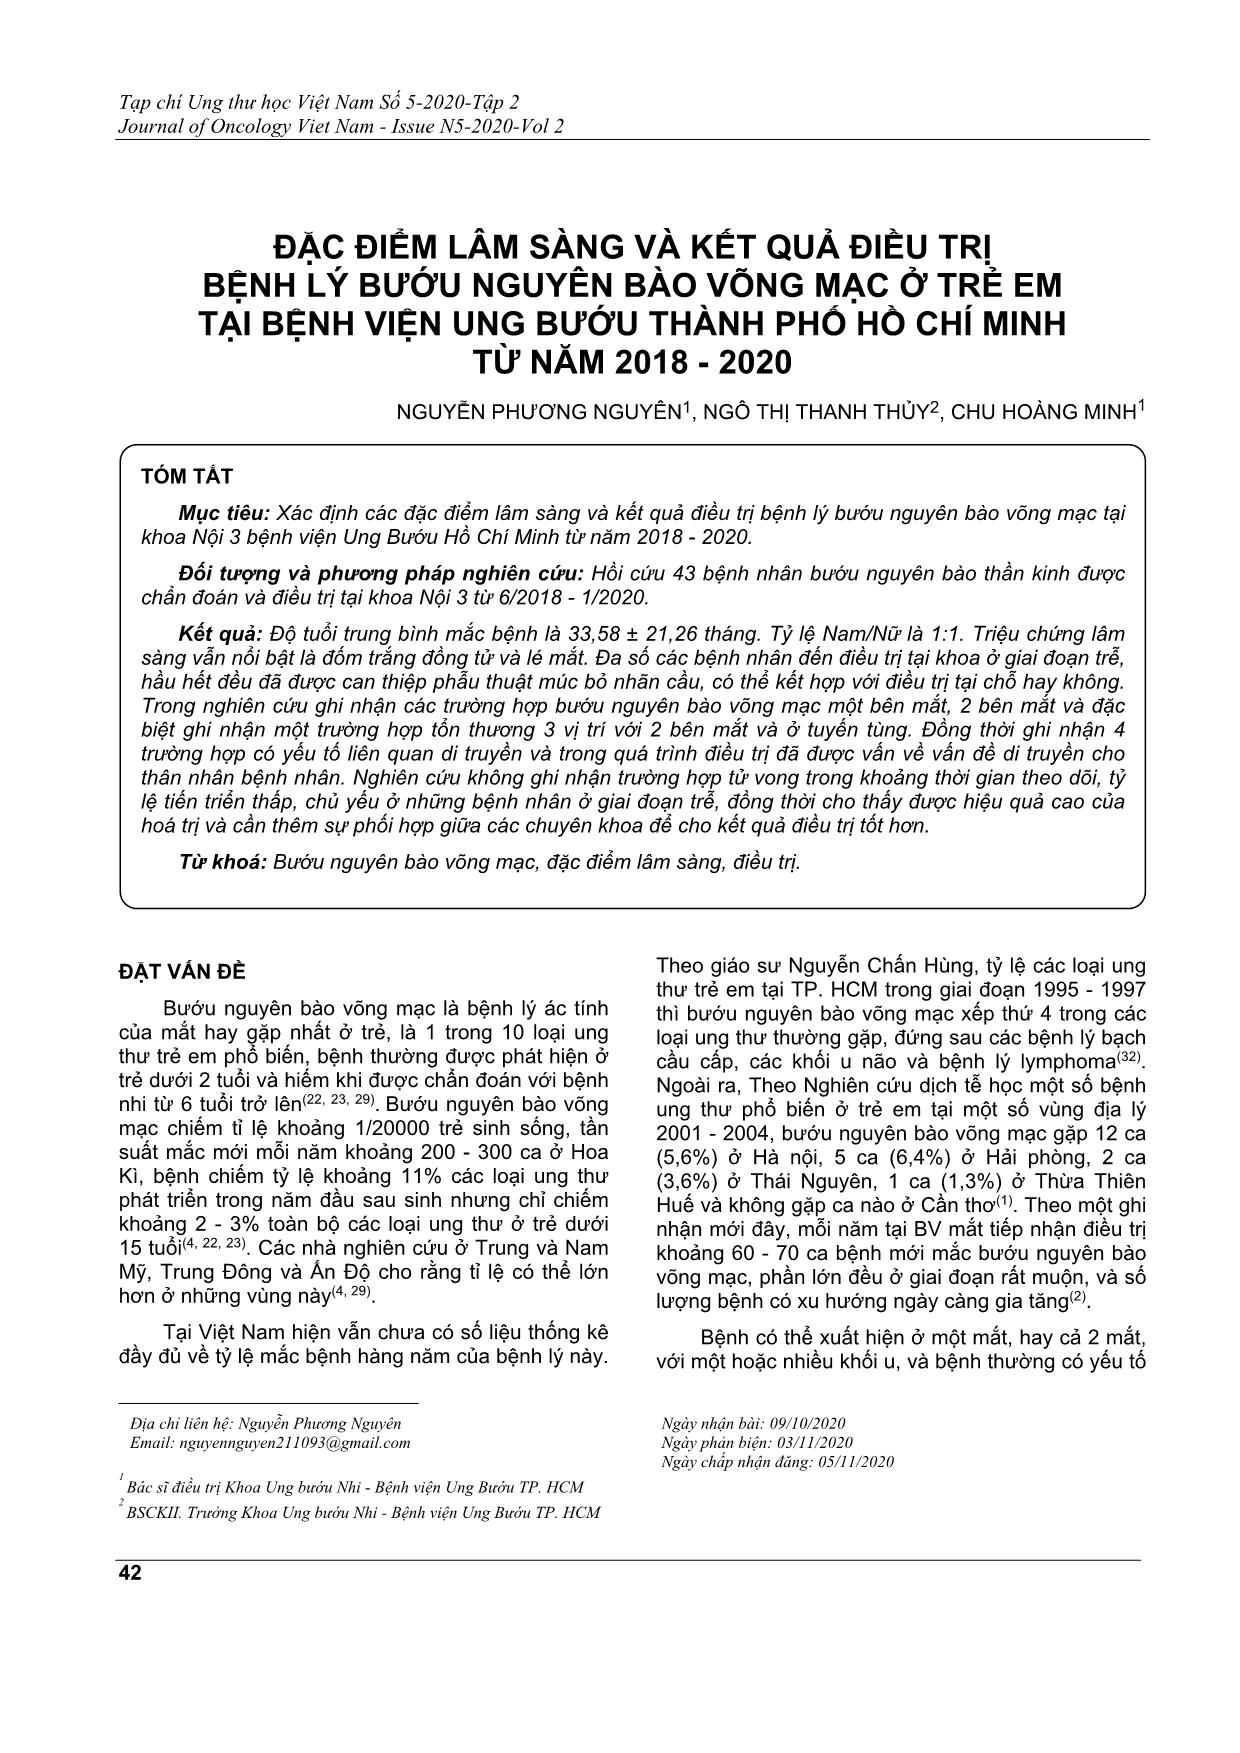 Đặc điểm lâm sàng và kết quả điều trị bệnh lý bướu nguyên bào võng mạc ở trẻ em tại bệnh viện ung bướu thành phố Hồ Chí Minh từ năm 2018 - 2020 trang 1